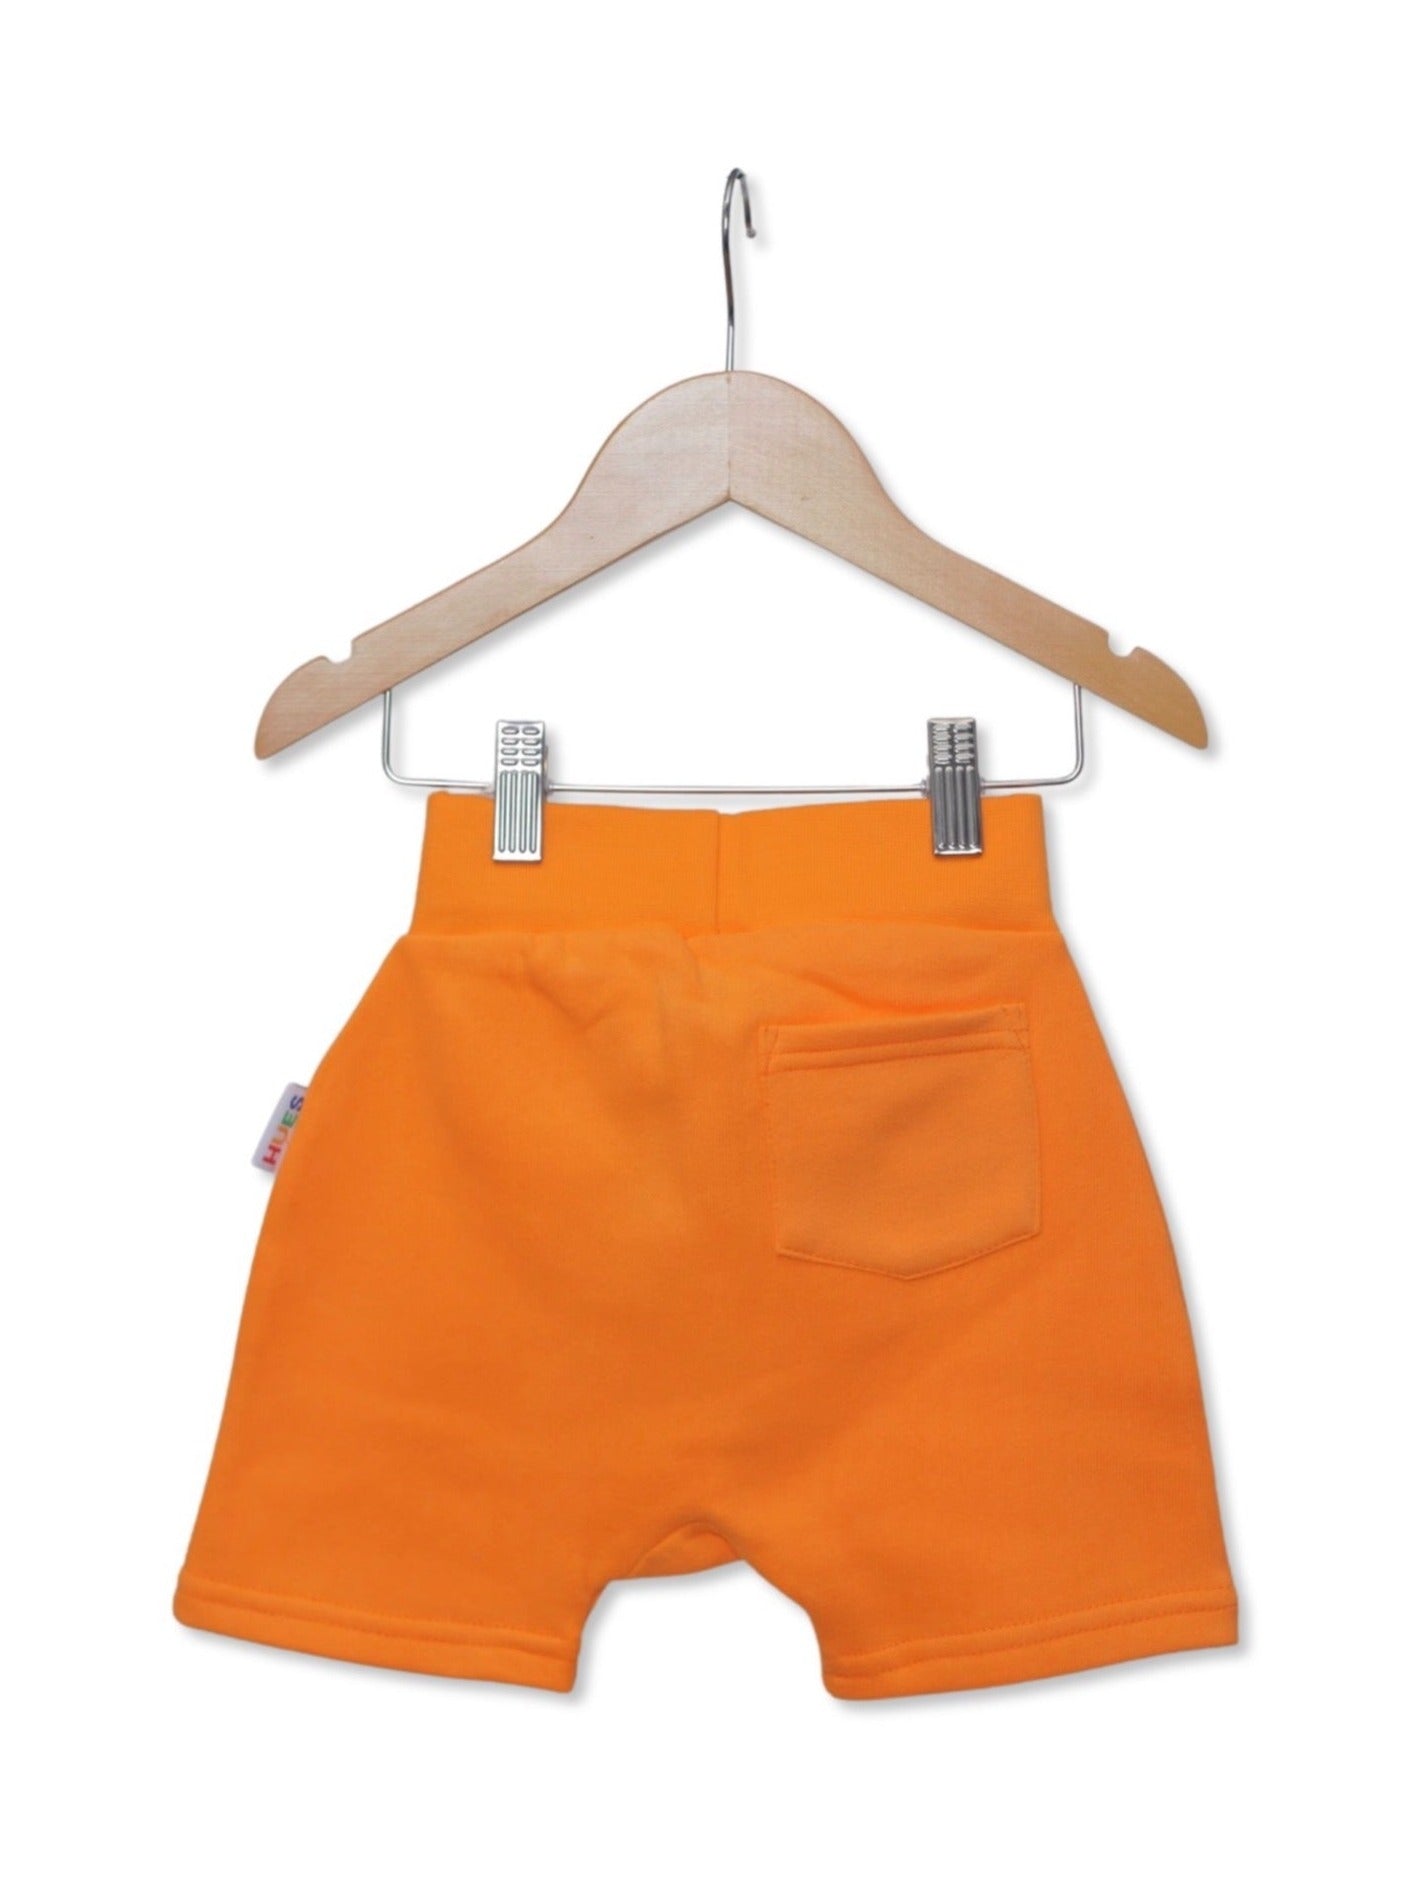 Kids Unisex Orange Shorts Back View- Hues Clothing